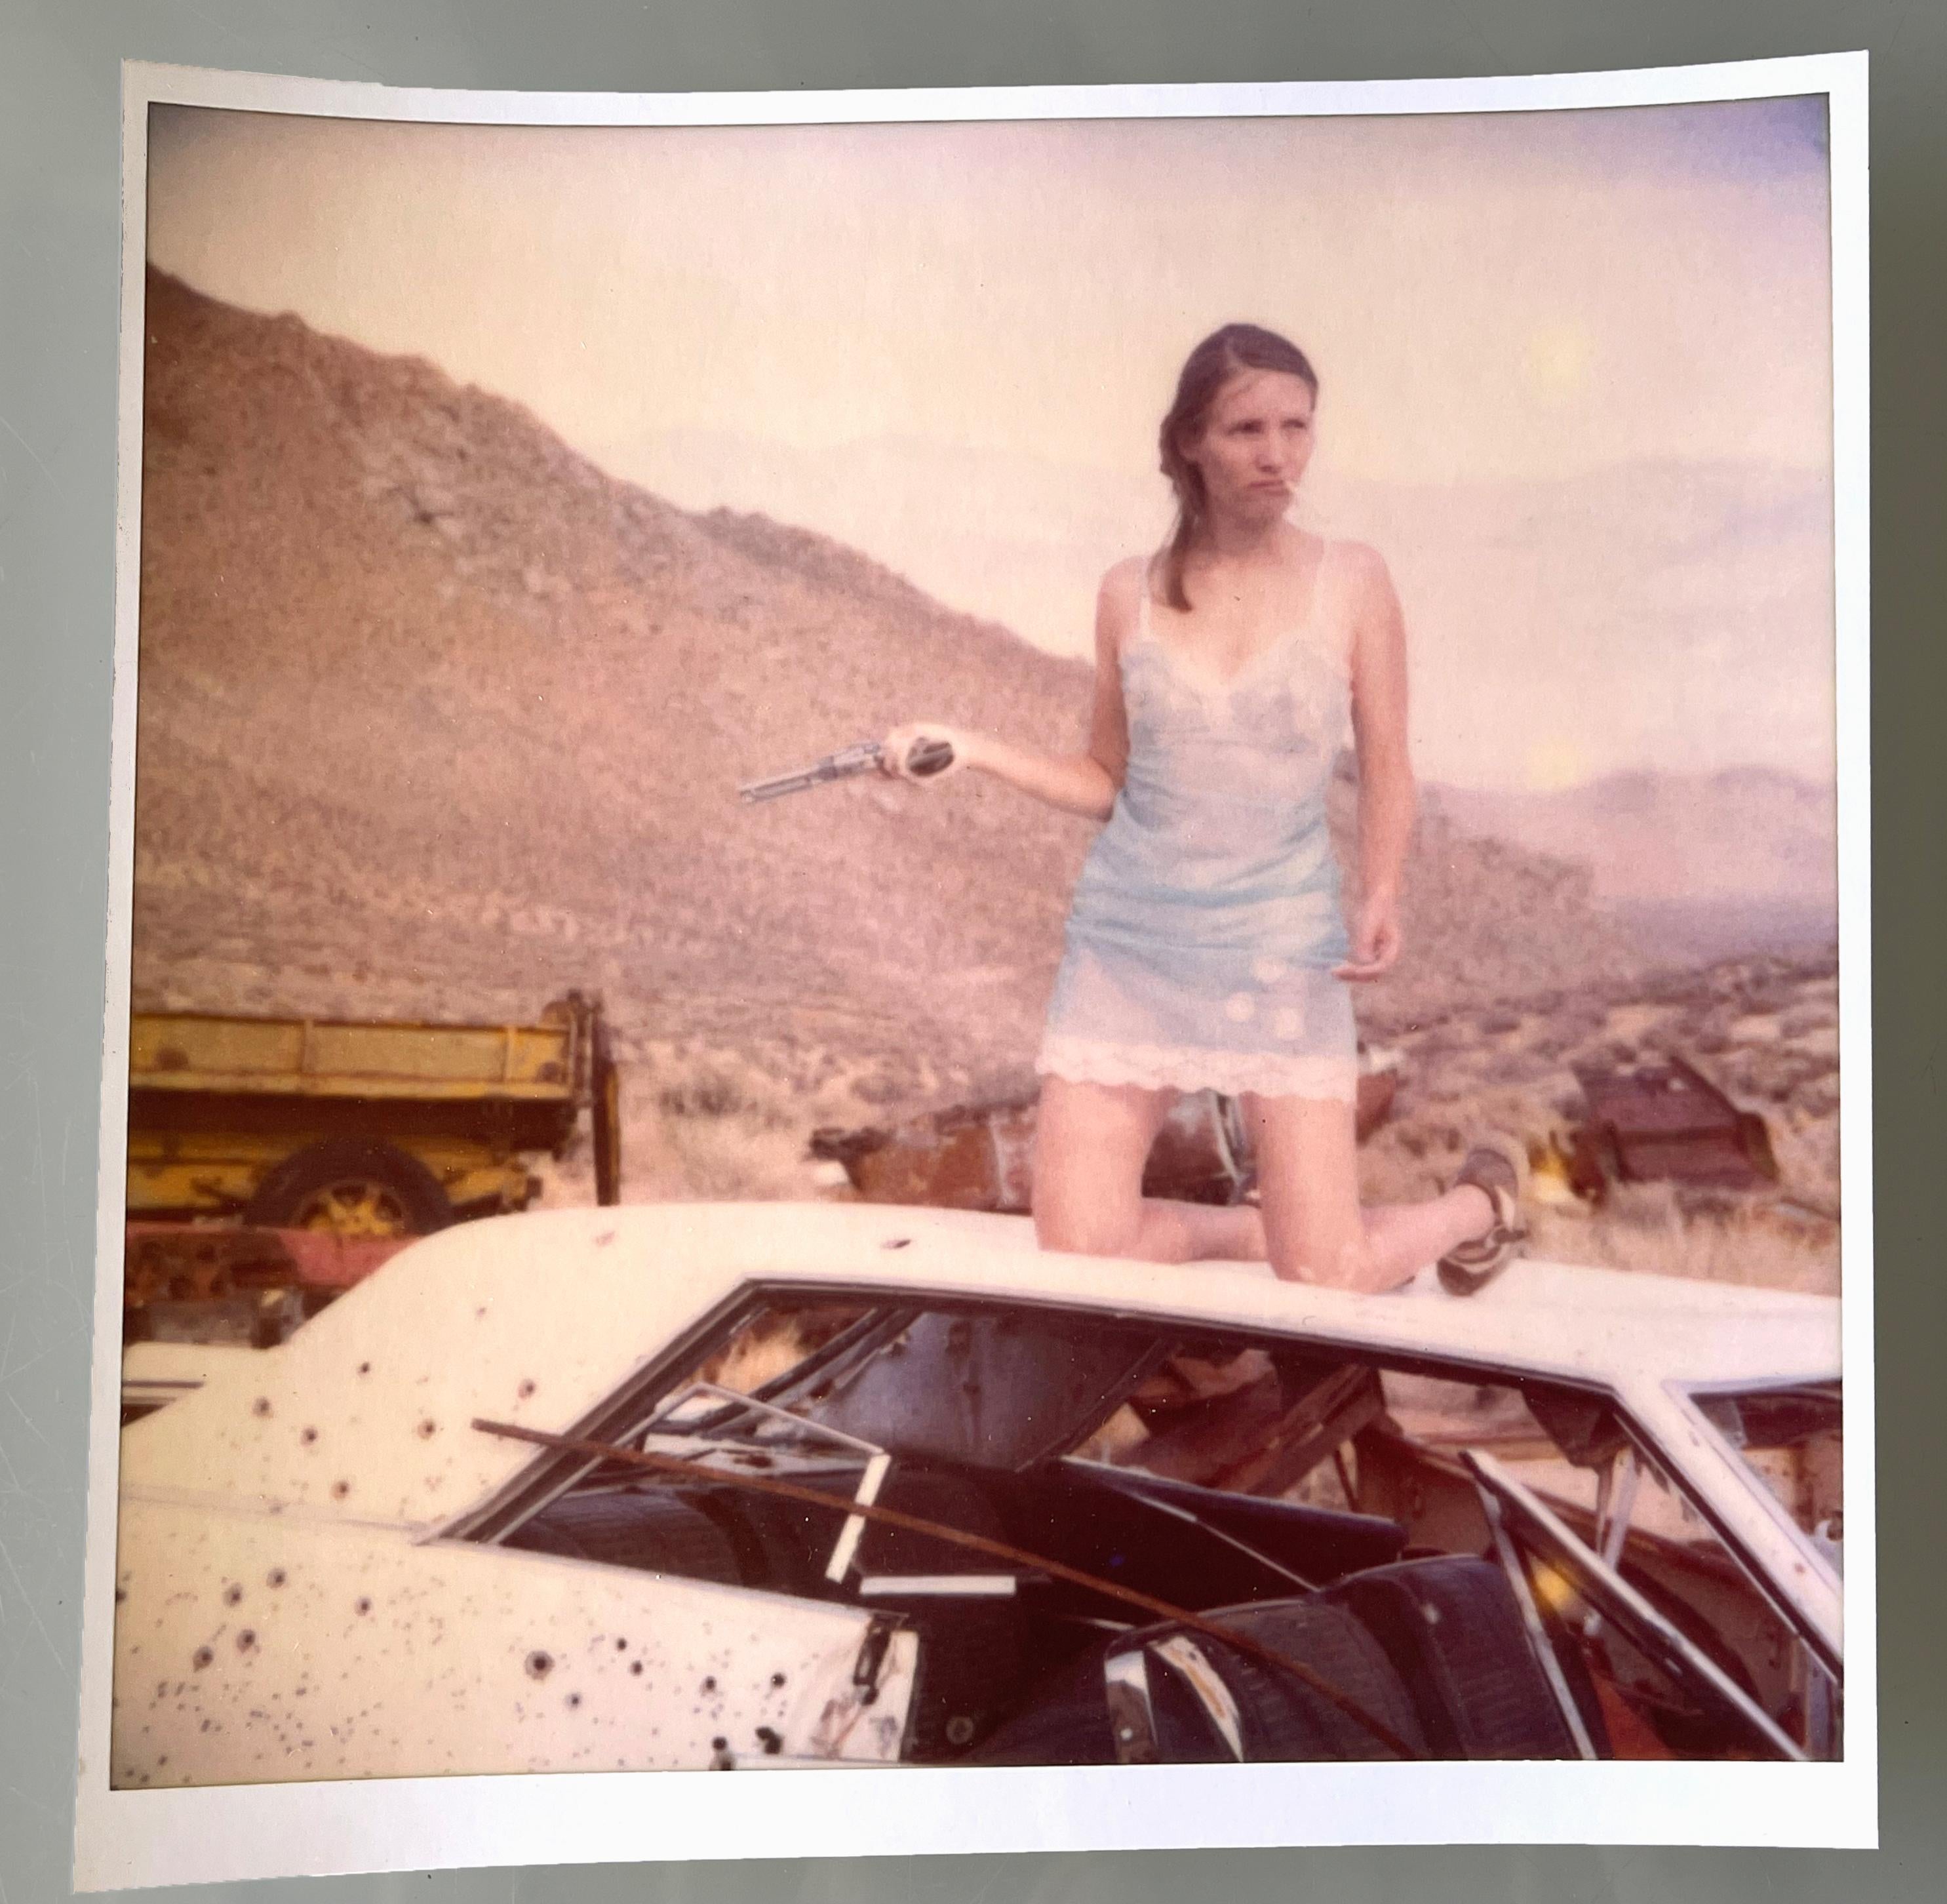 Hellblaue Dessous (Wastelands) - Polaroid, Contemporary, Farbe, 21. Jahrhundert – Photograph von Stefanie Schneider